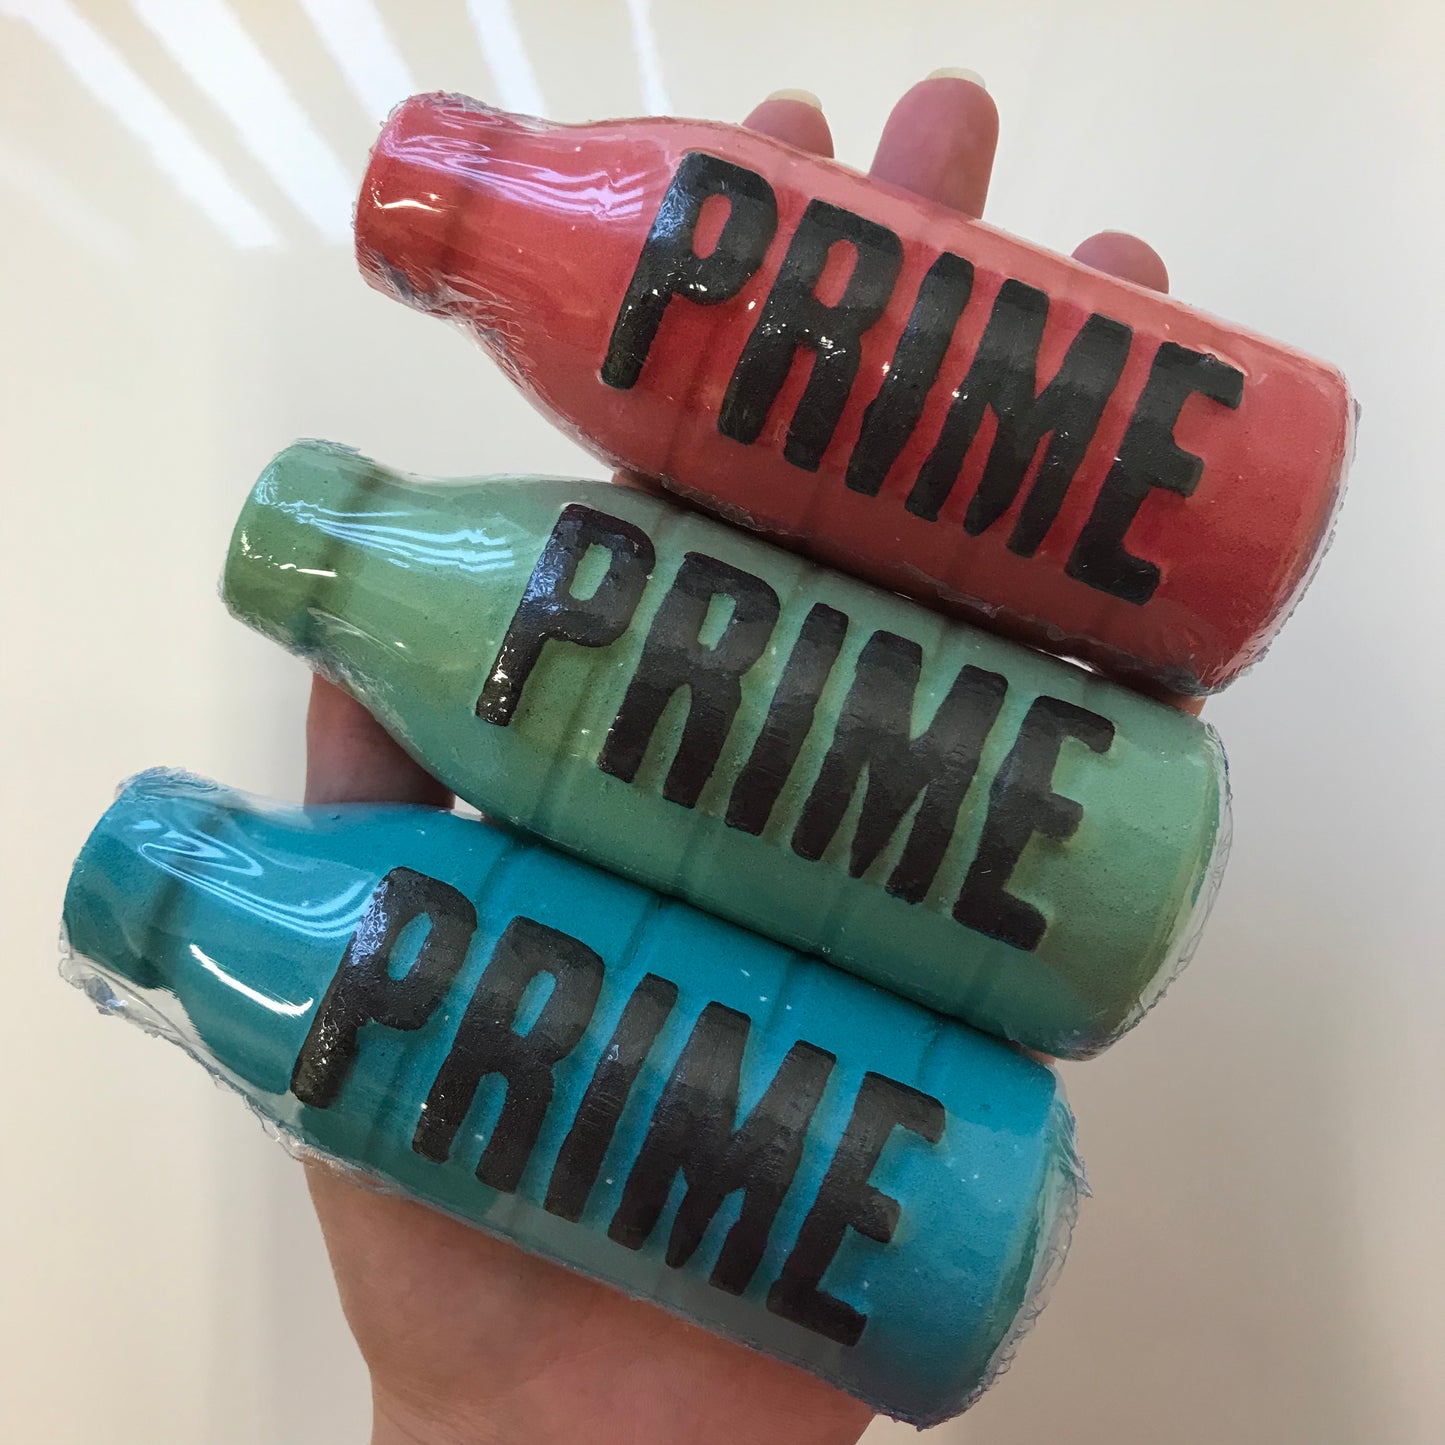 Watermelon Prime Bath Bomb